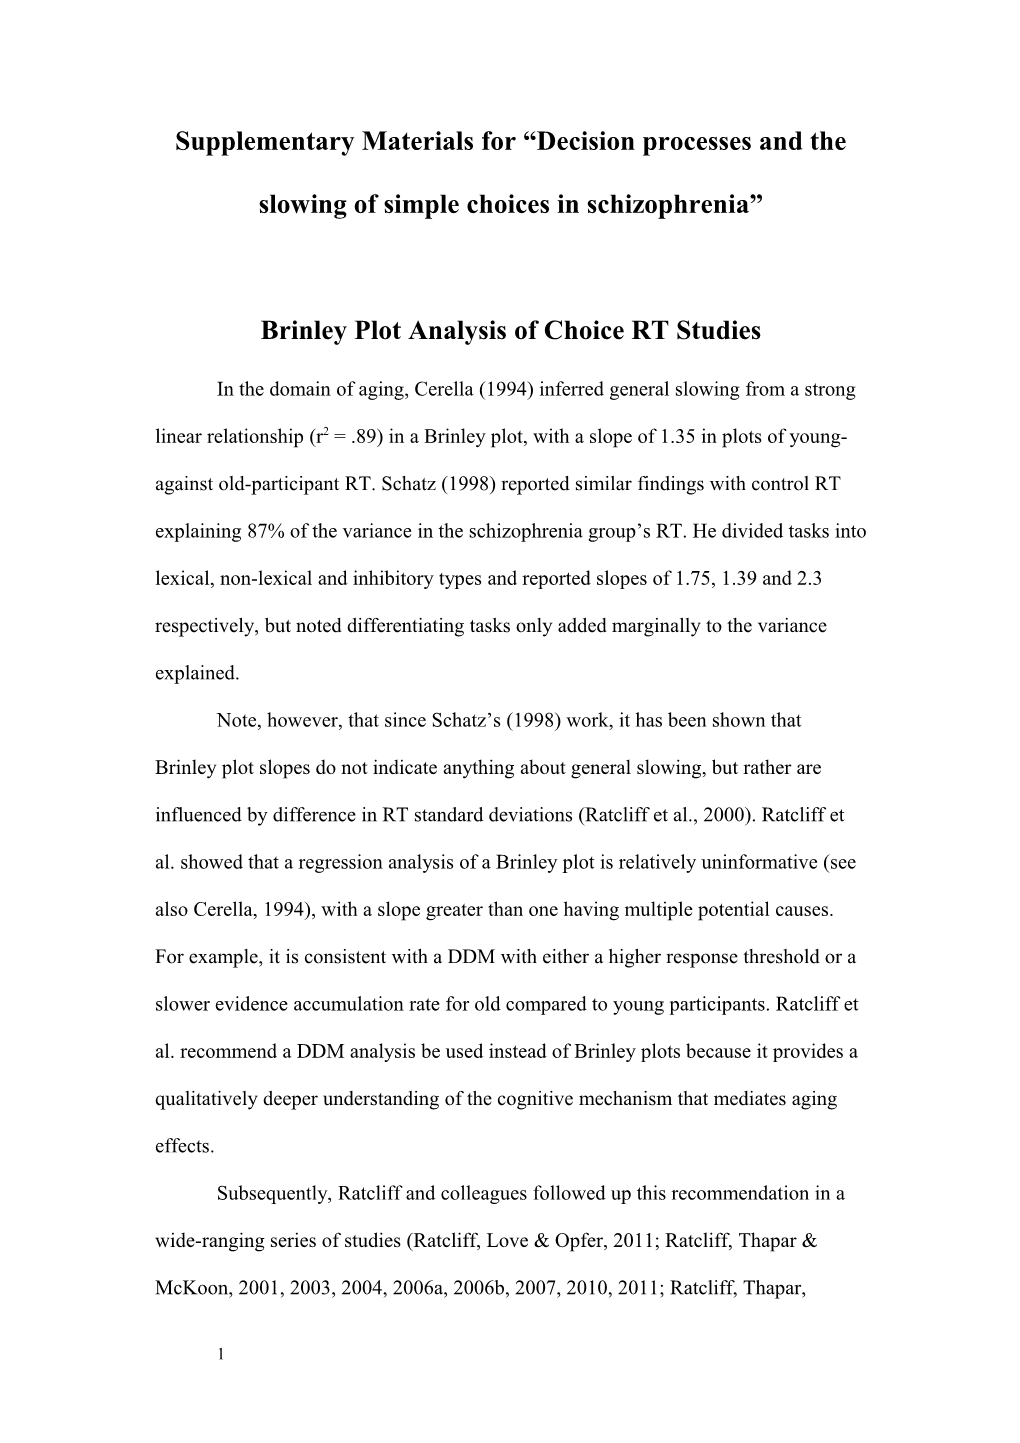 Brinley Plot Analysis of Choice RT Studies